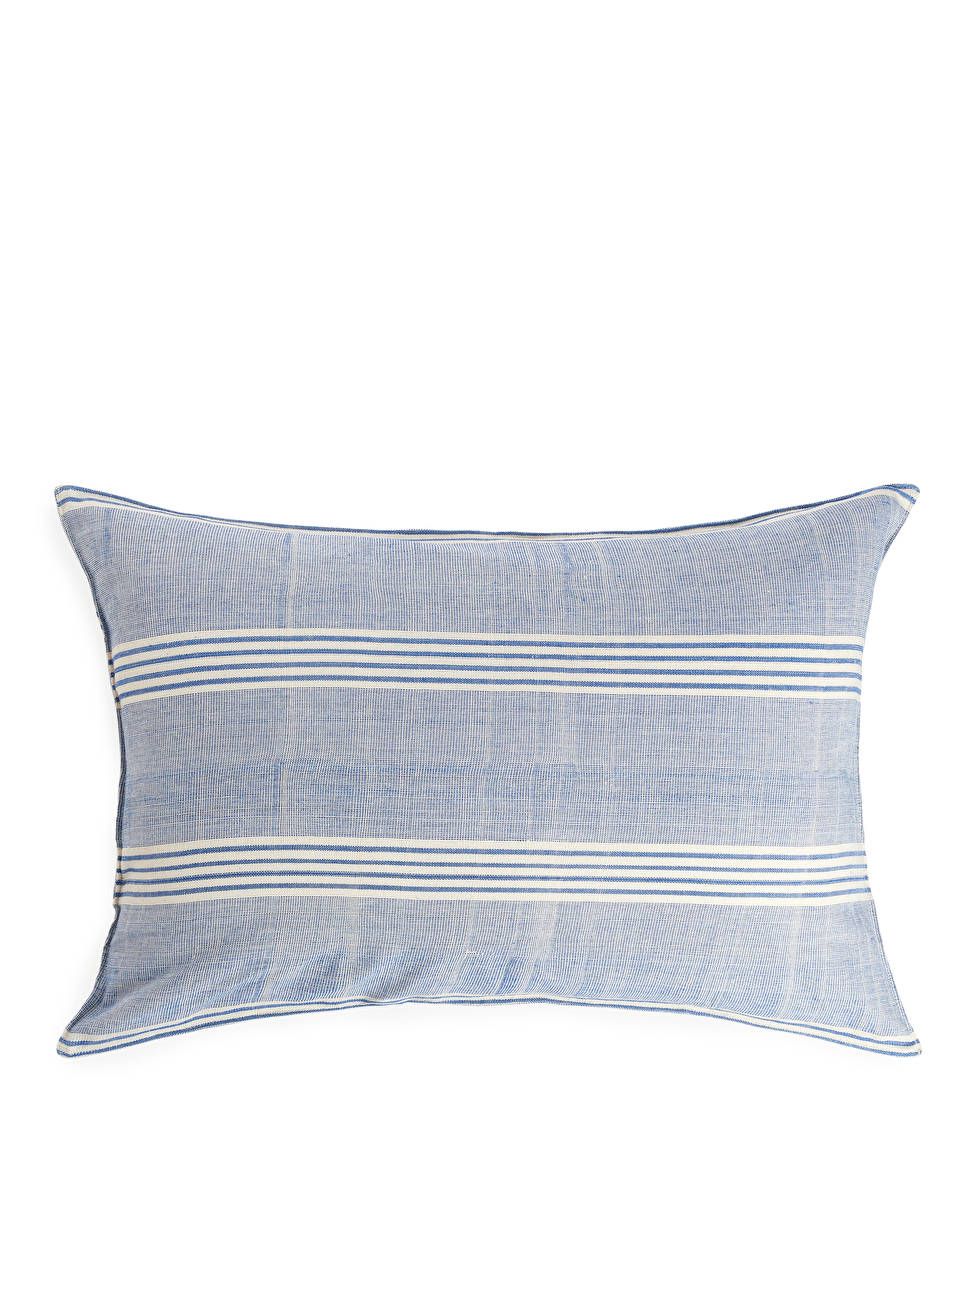 Tensira Cushion Cover 40x60 cm - Light Blue/White - ARKET PT | ARKET (US&UK)